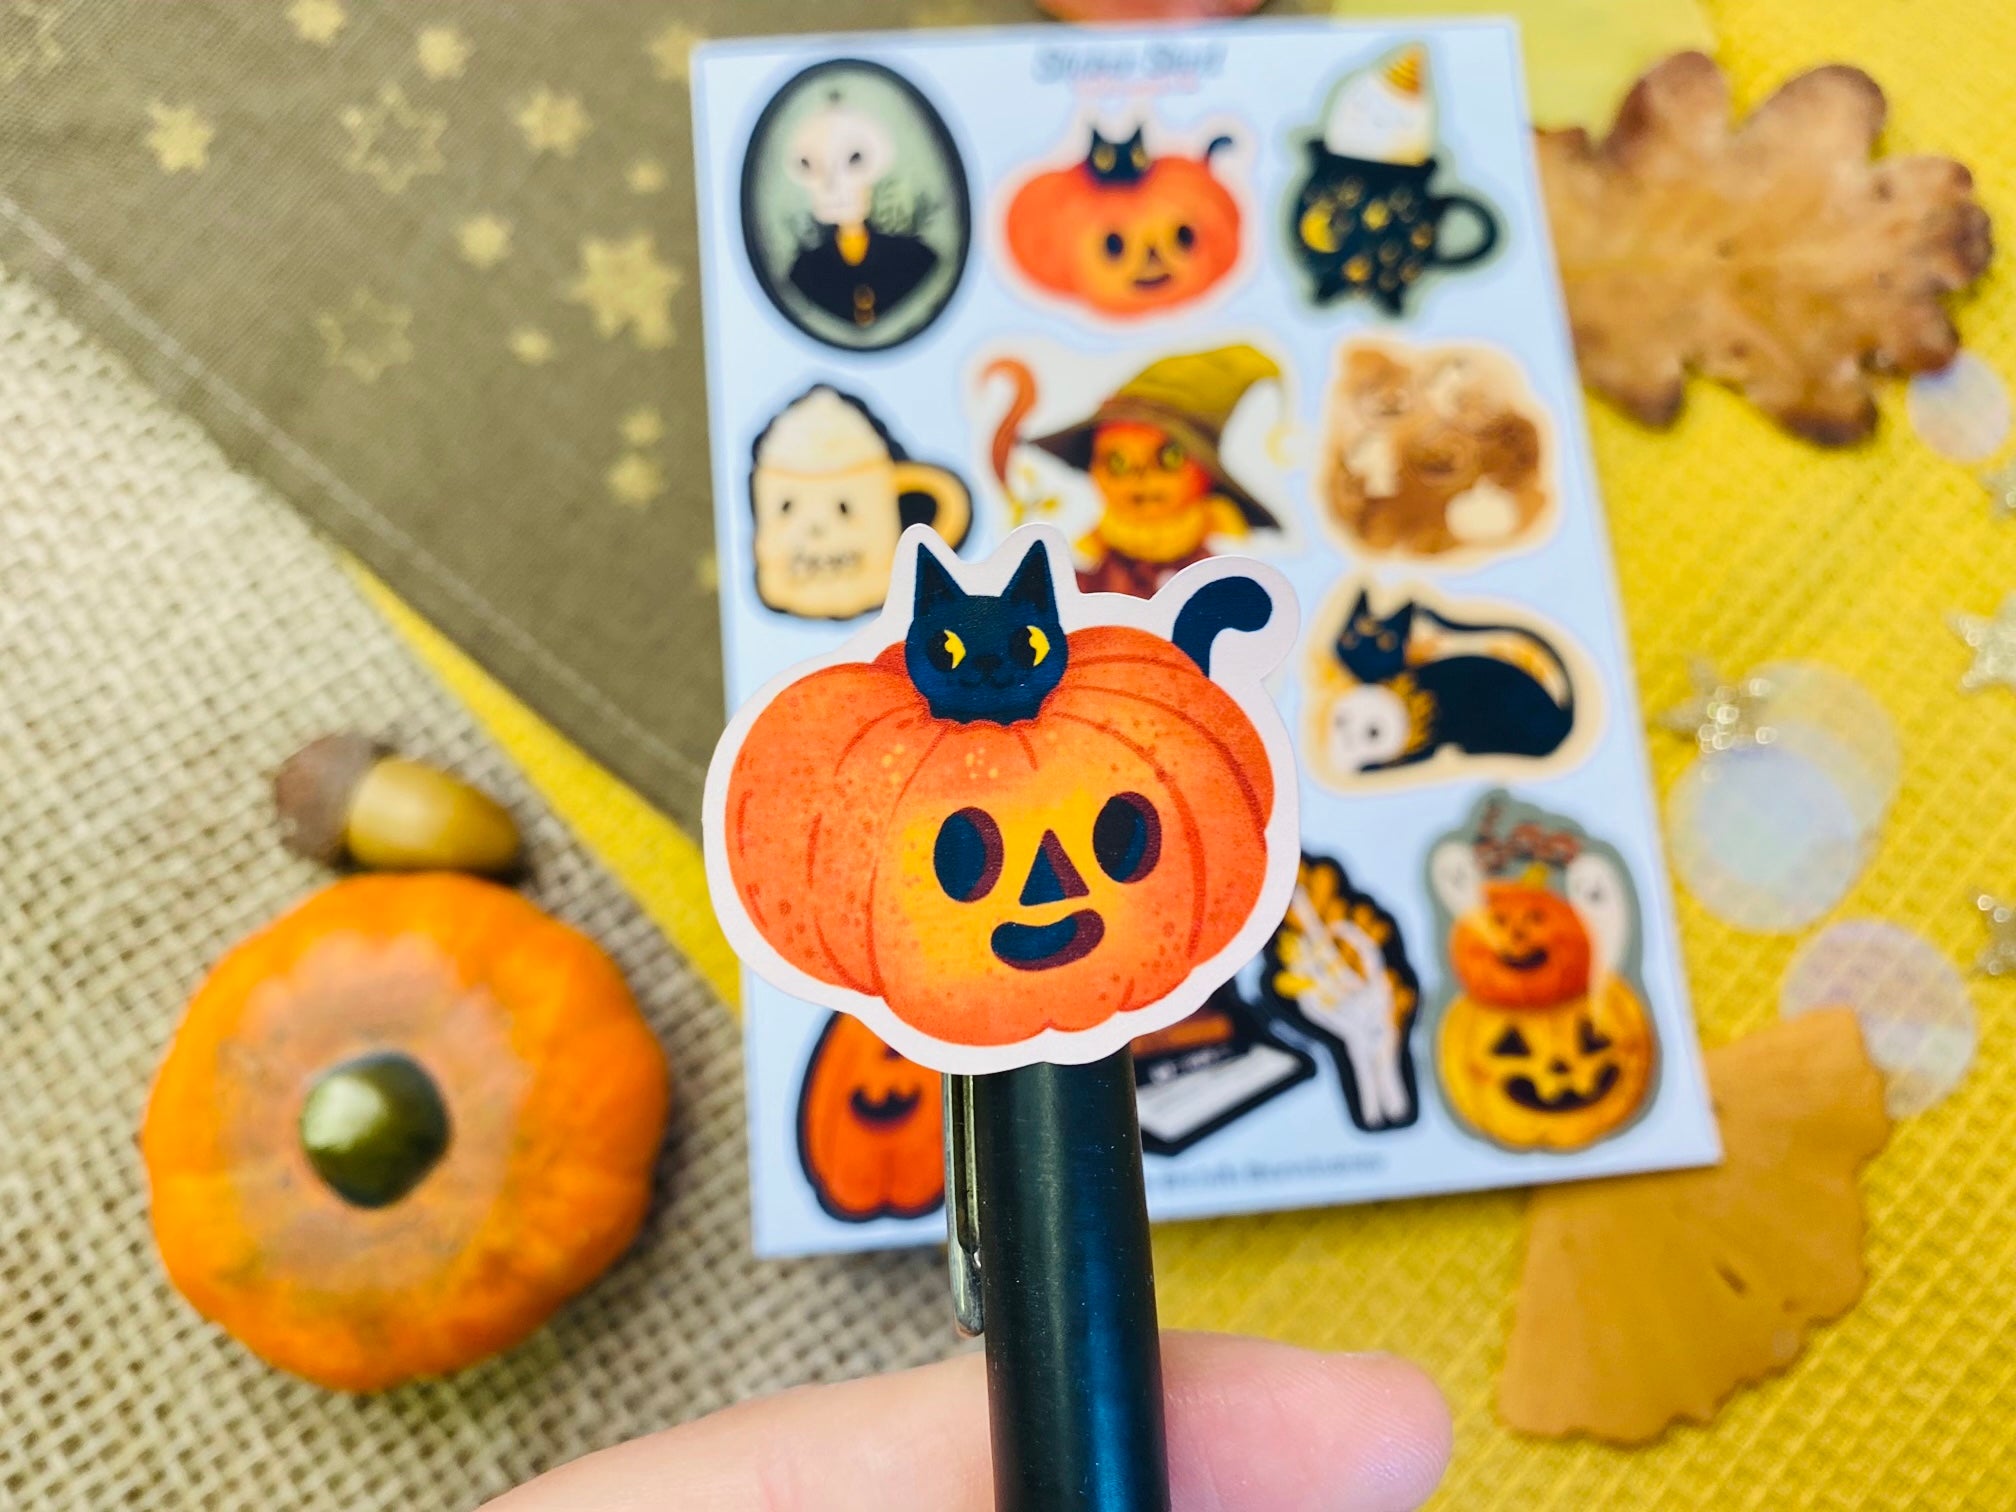 Halloween 2 Sticker Sheet